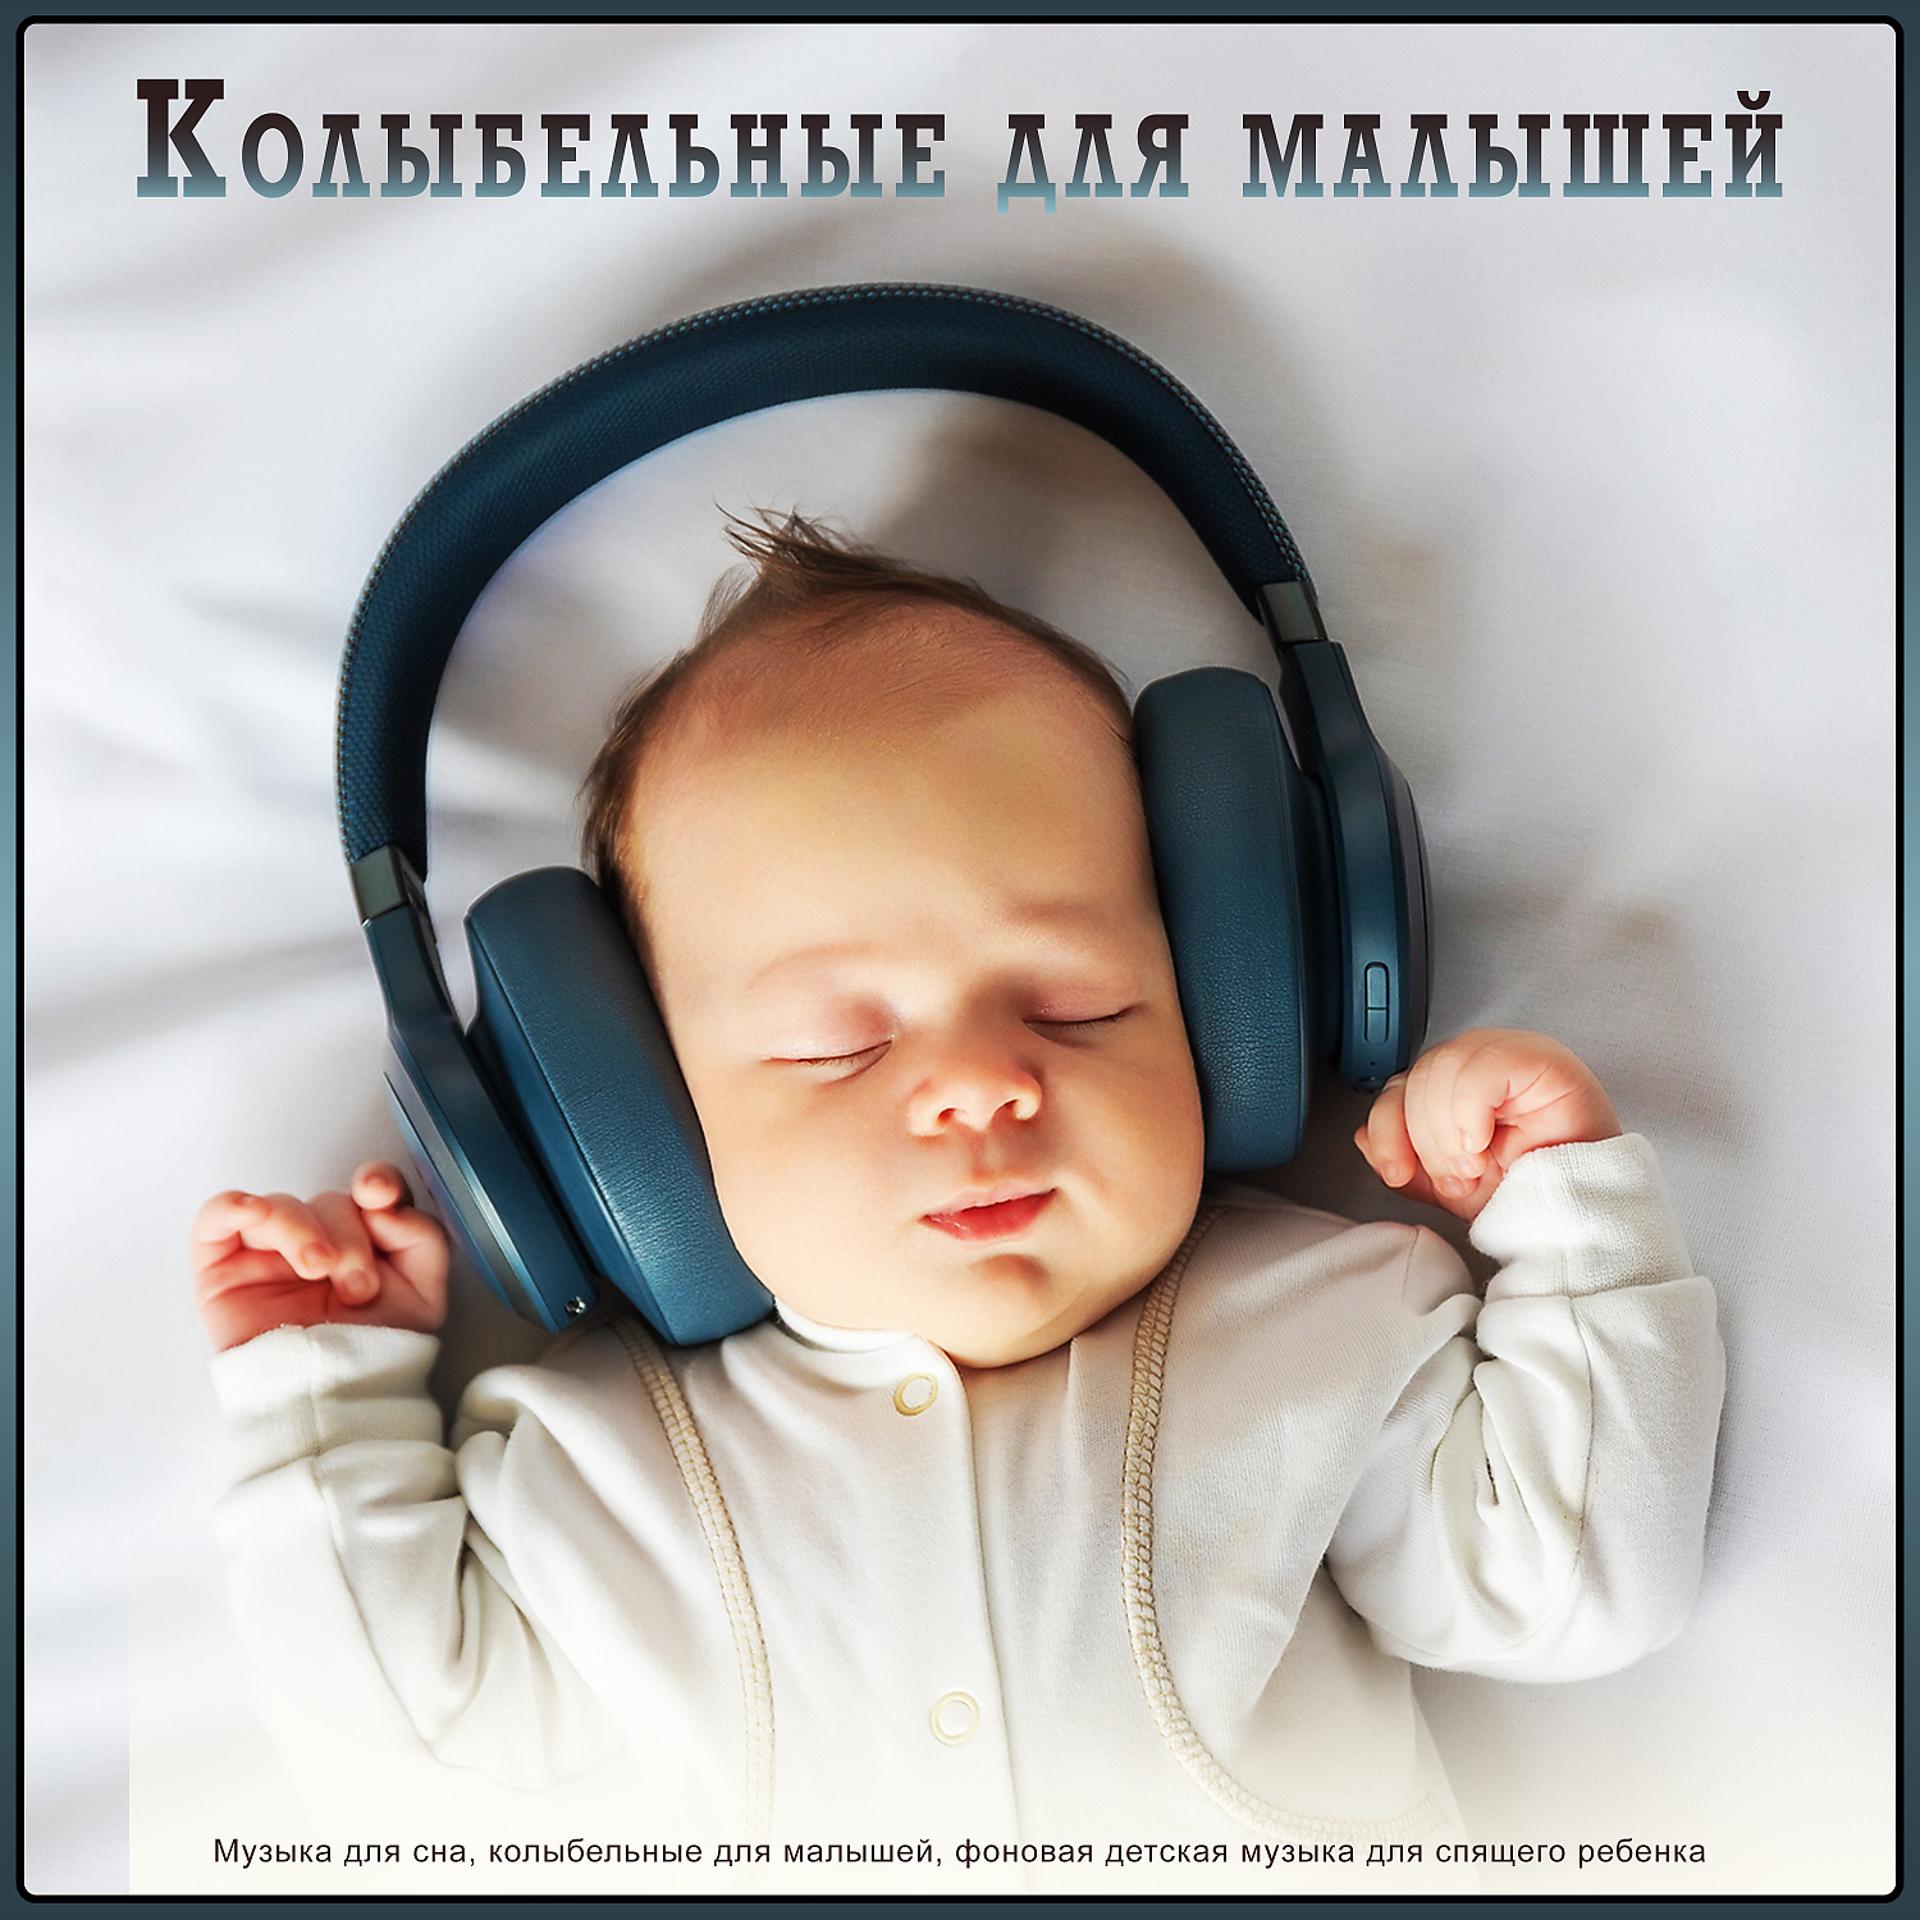 Музыка для сна младенца. Музыка для сна для малышей. Мелодии для засыпания малышей. Колыбельная для малышей успокаивающая.